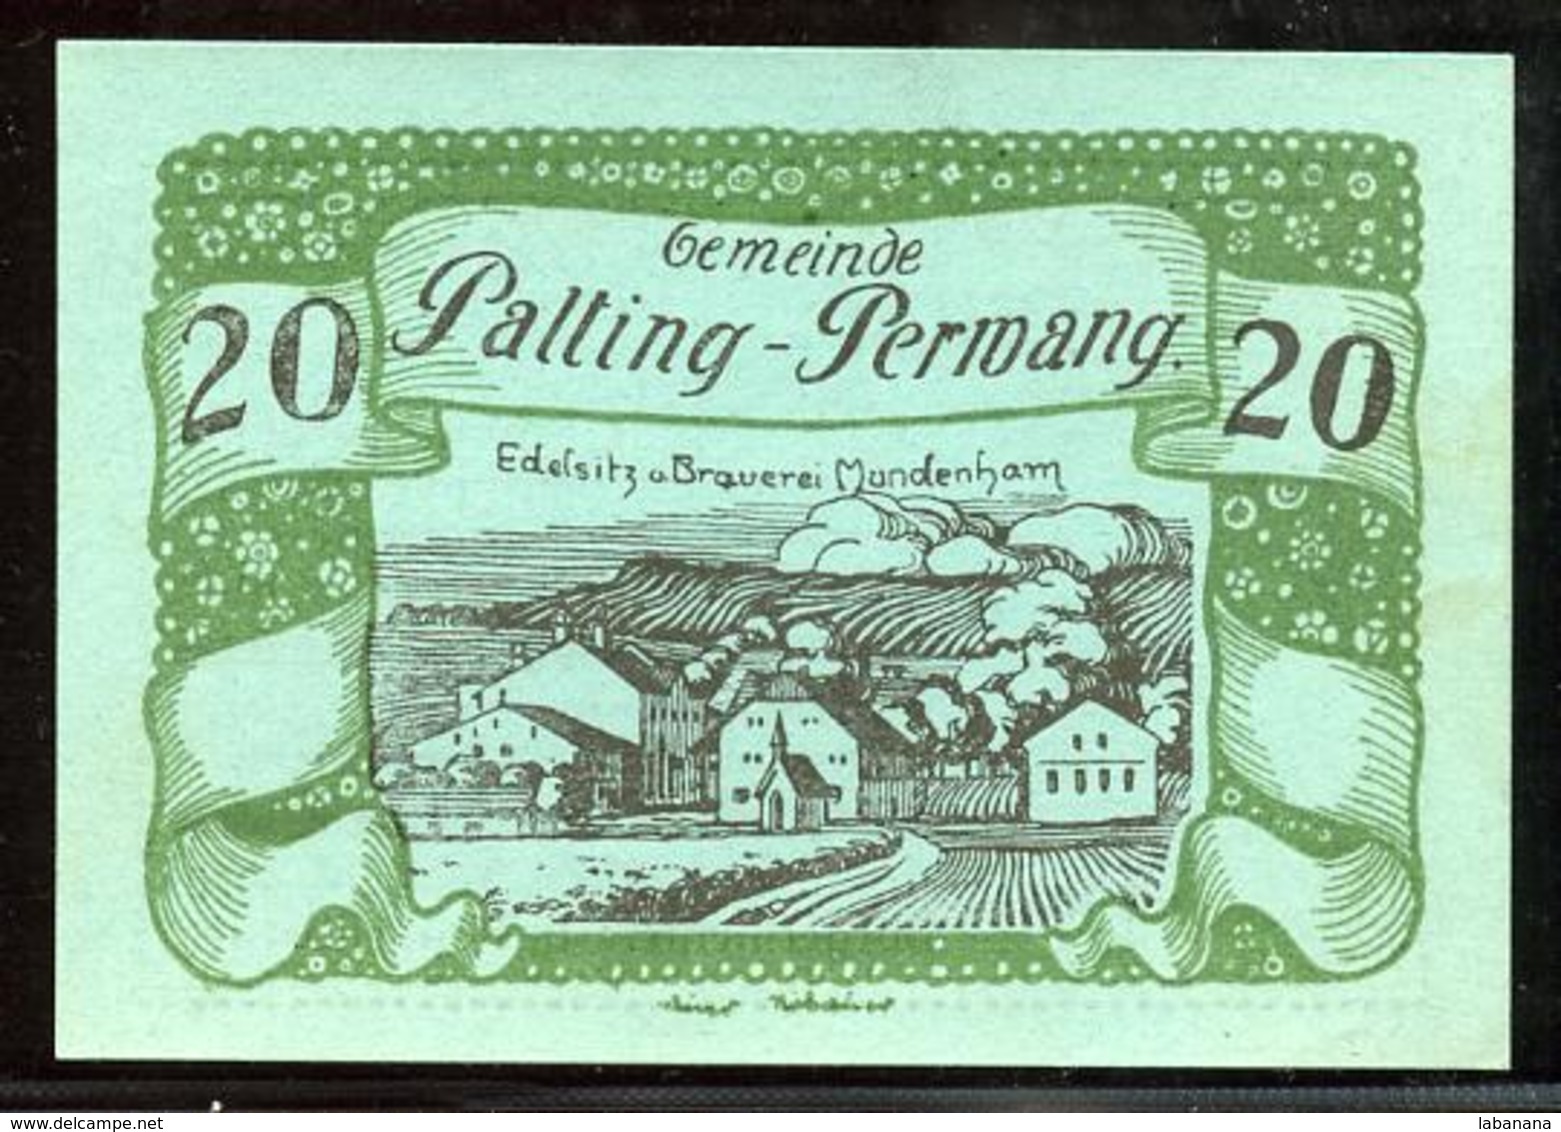 344-Palting-Perwang Billets De 10, 20 Et 50h 1920 - Autriche